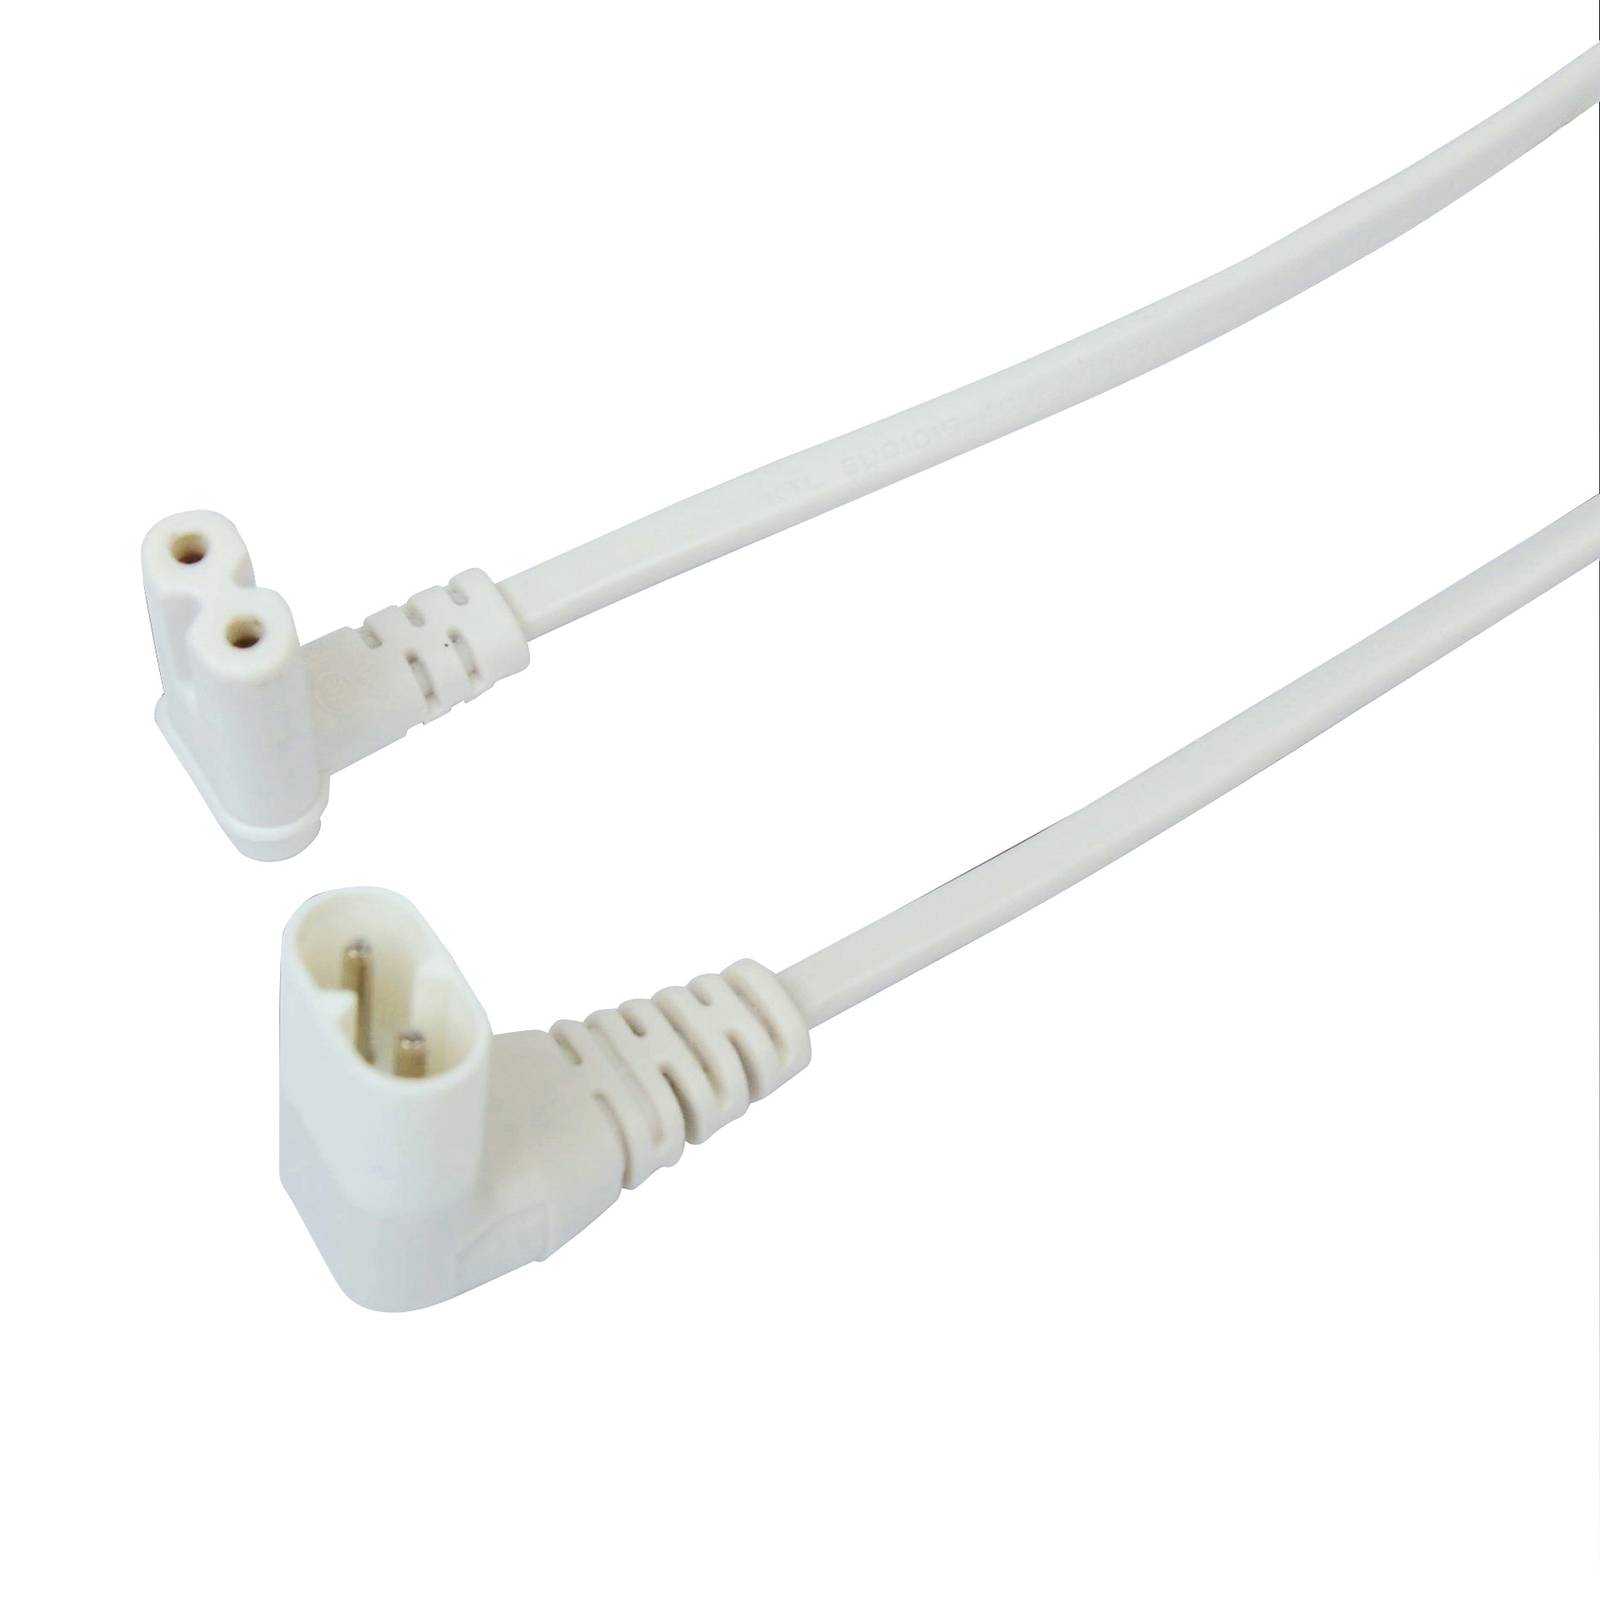 Hera Spojovací kabel pro EcoLite, 90°, 15 cm